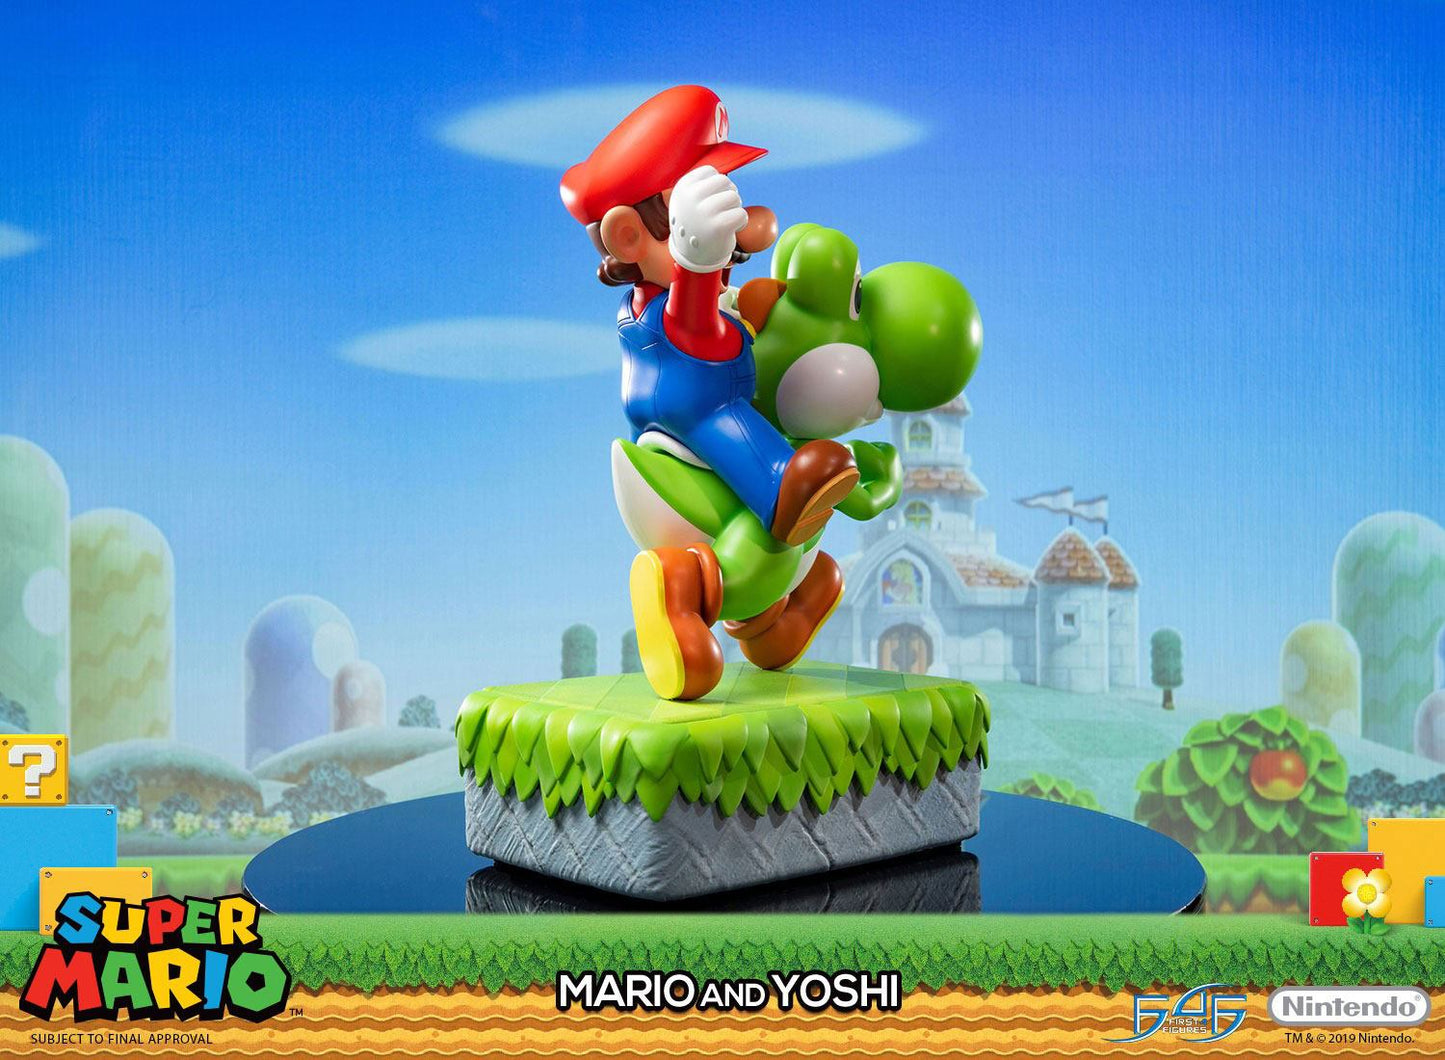 Super Mario & Yoshi Statue